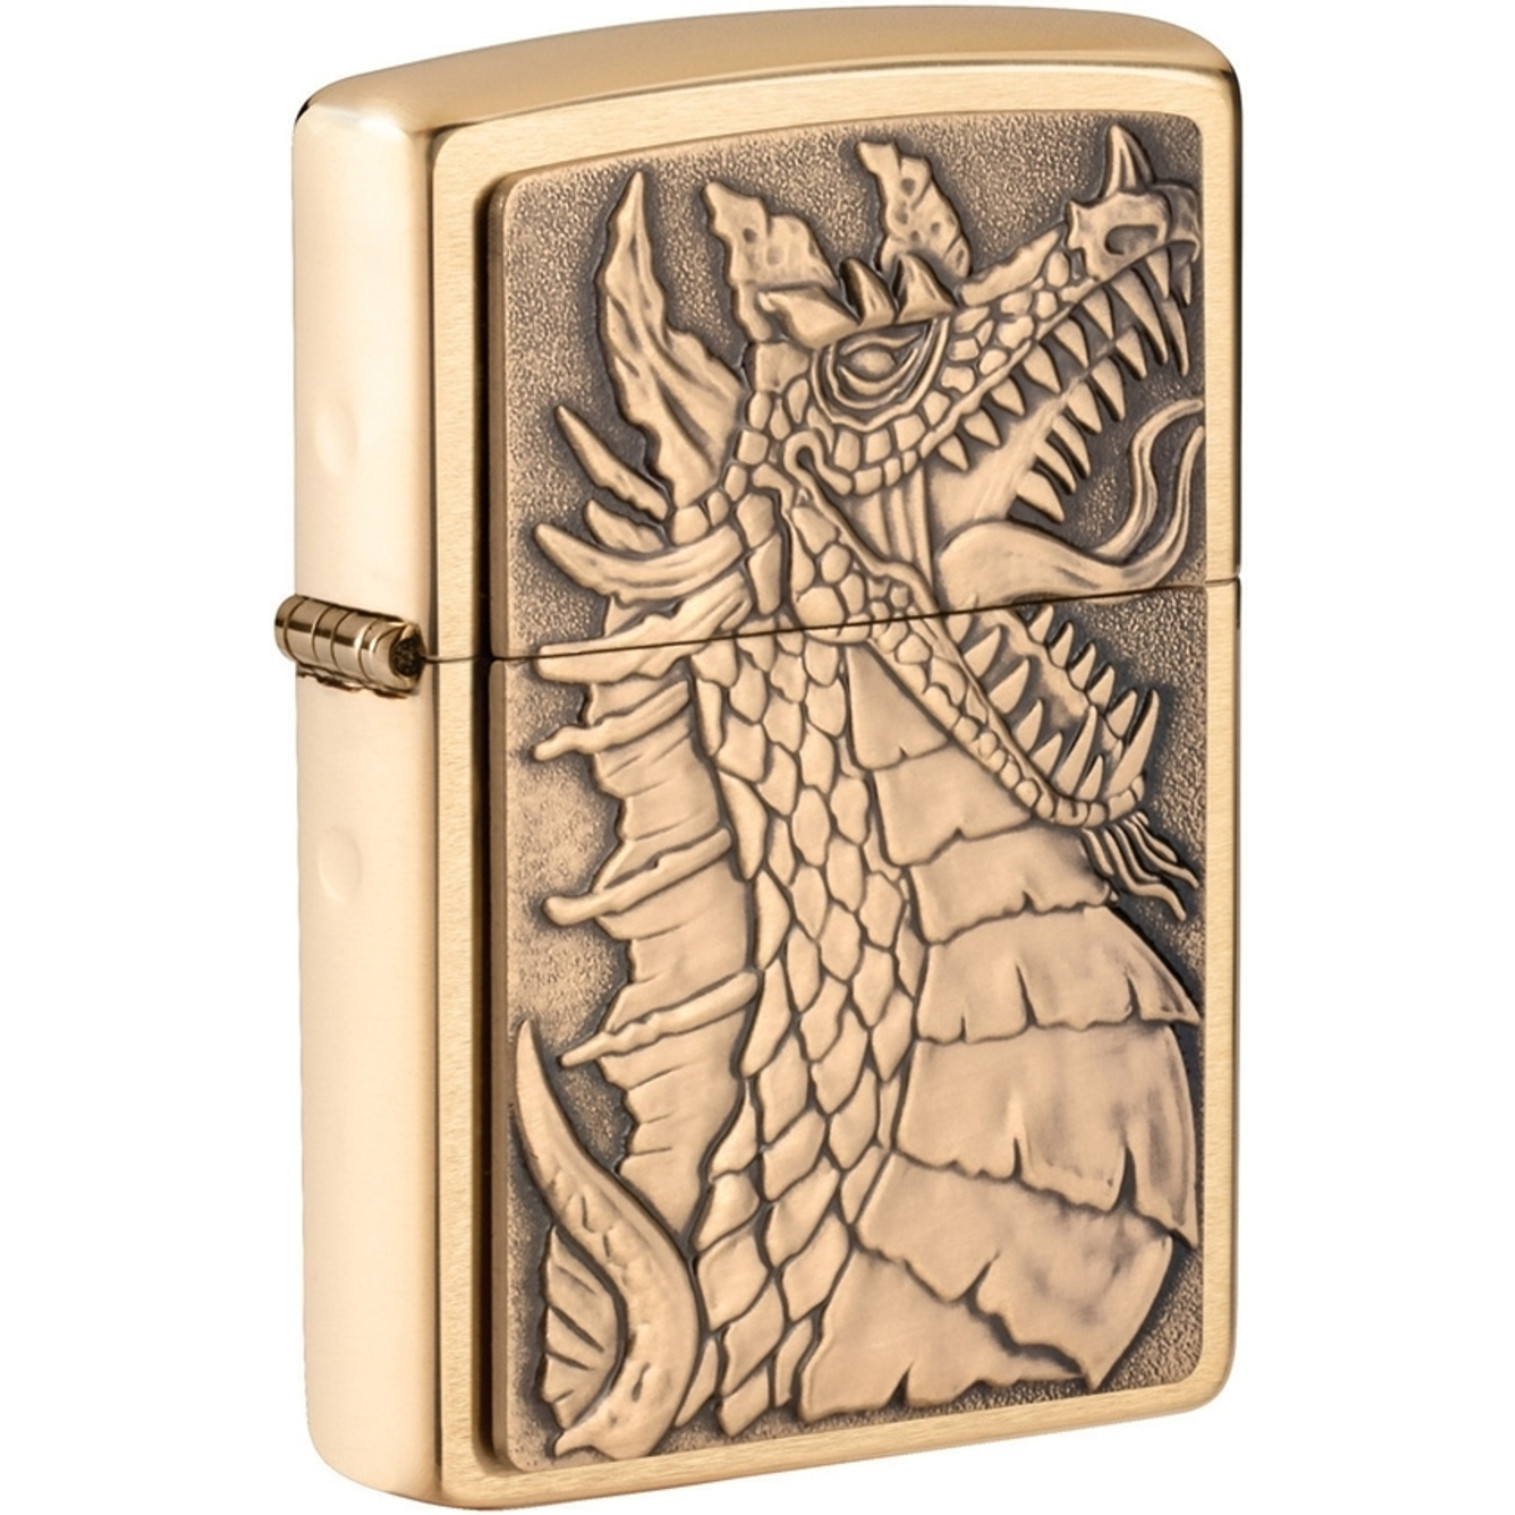 Dragon 1 Emblem Lighter